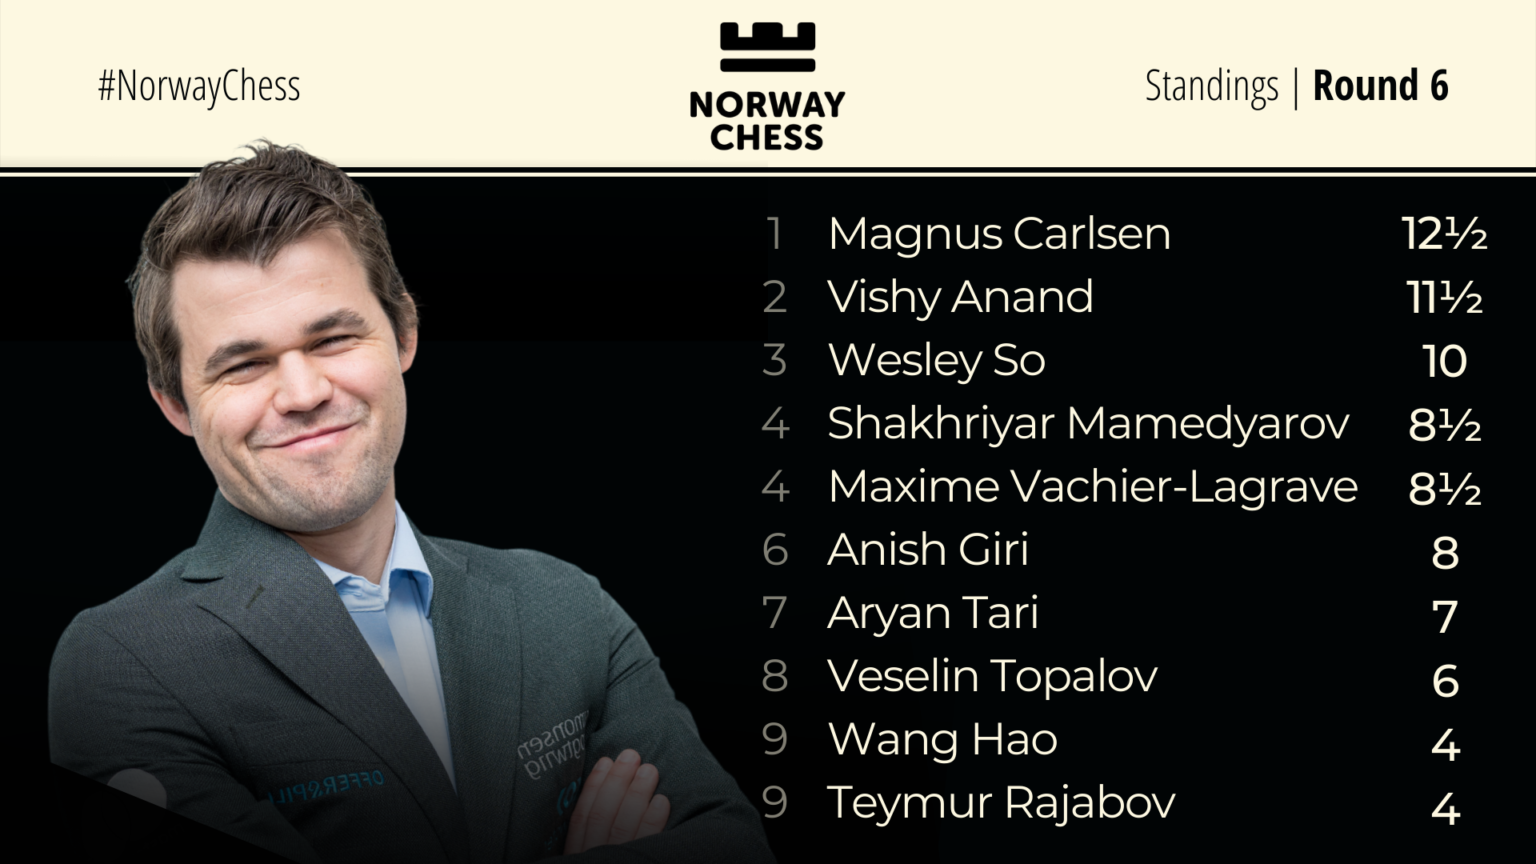 Norway Chess Standings Round 6